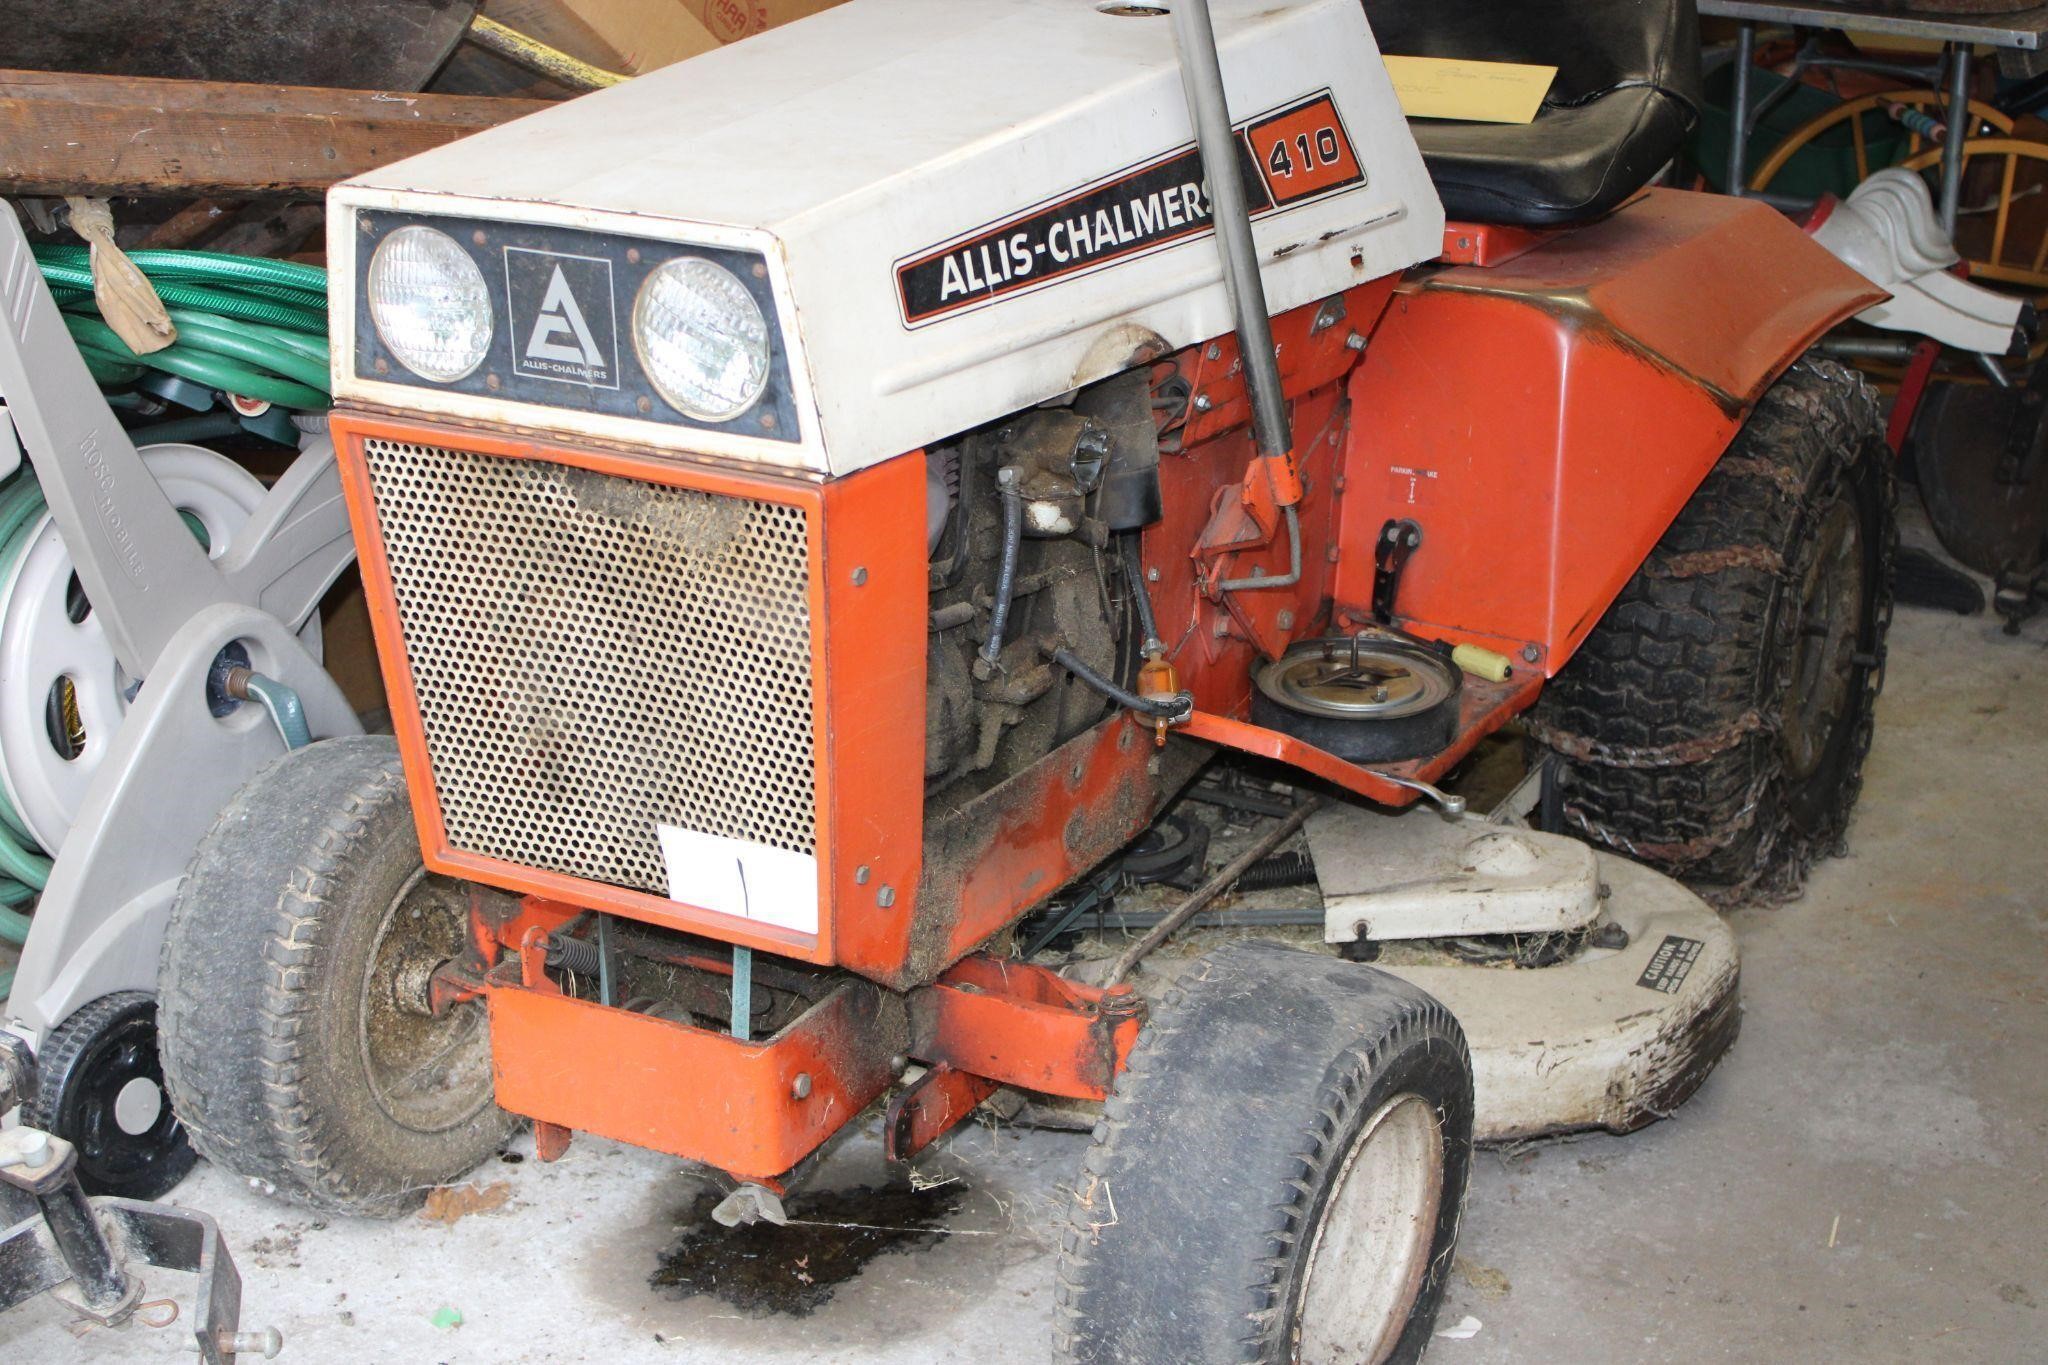 410 Allis Chalmers Garden Tractor w/ attachments